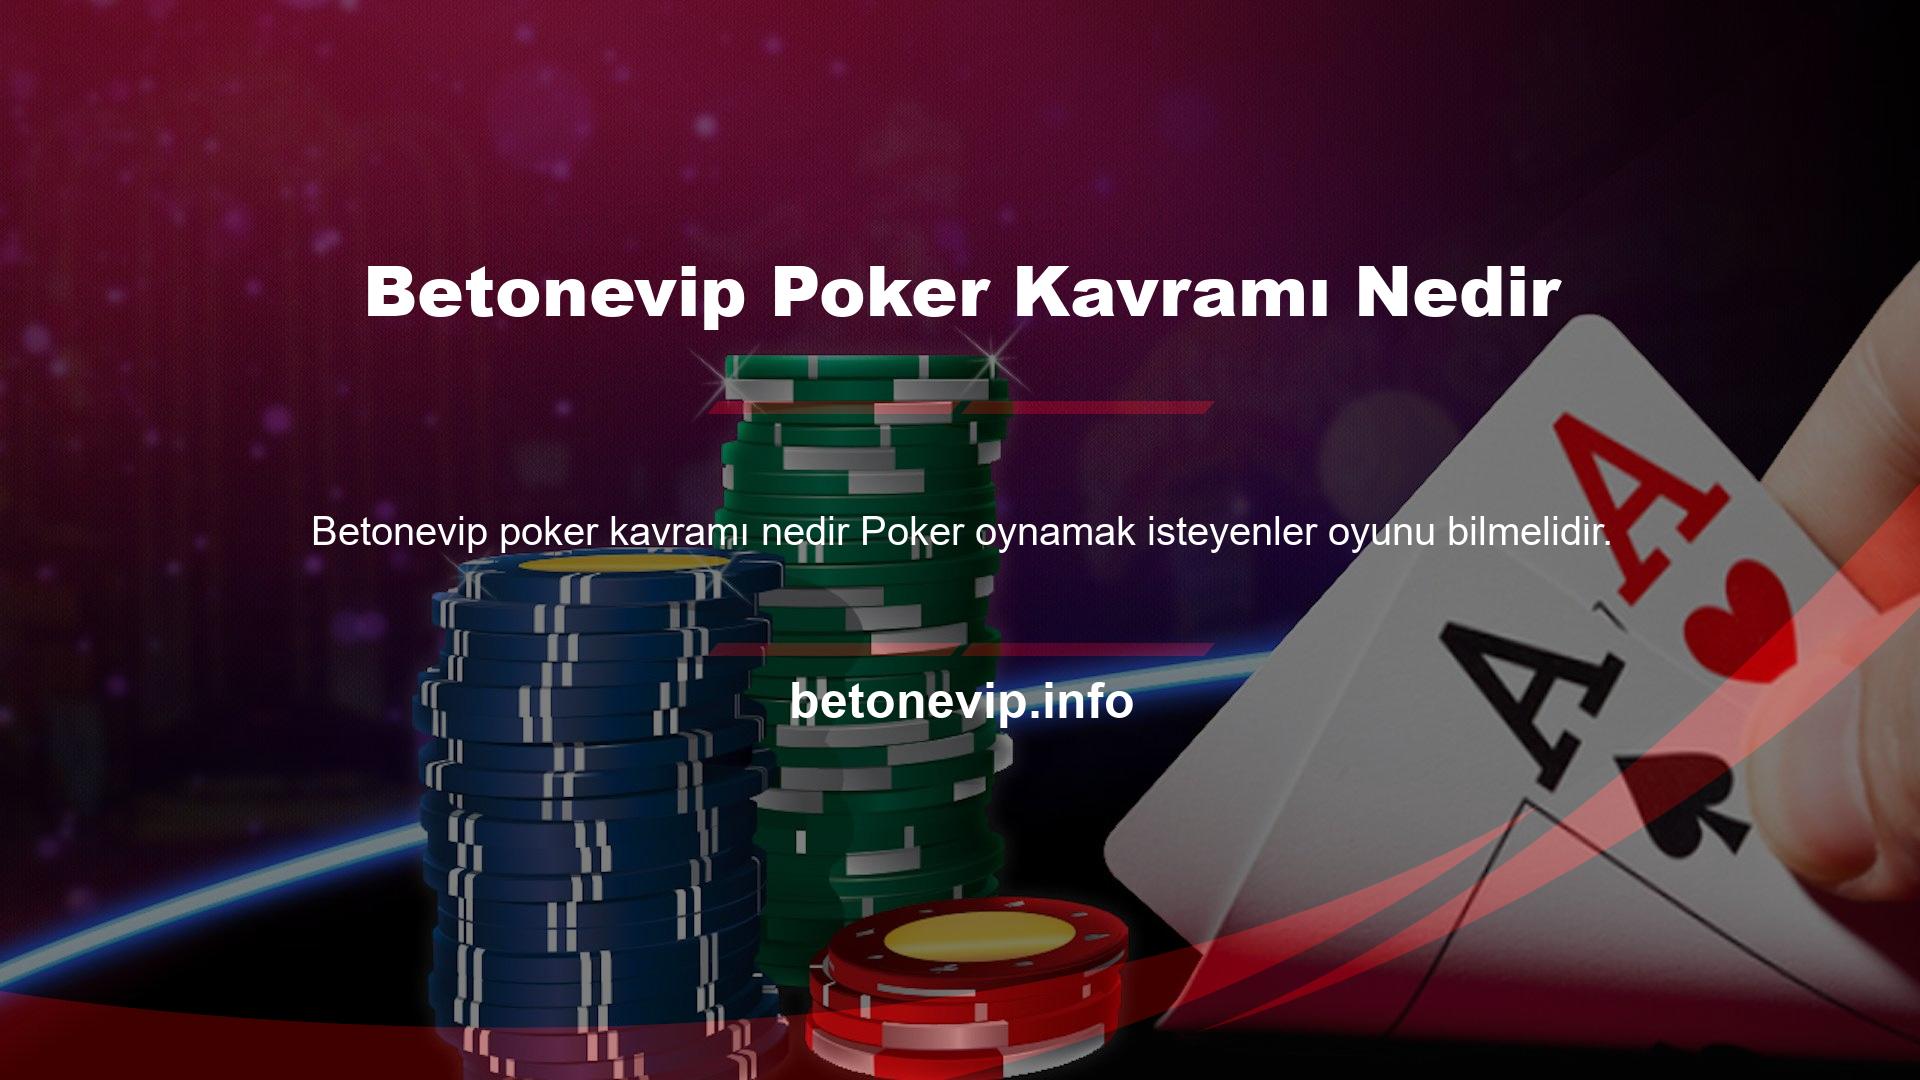 Betonevip Poker Kavramı Nedir Bu oyunda bilinmesi gereken birkaç terim vardır